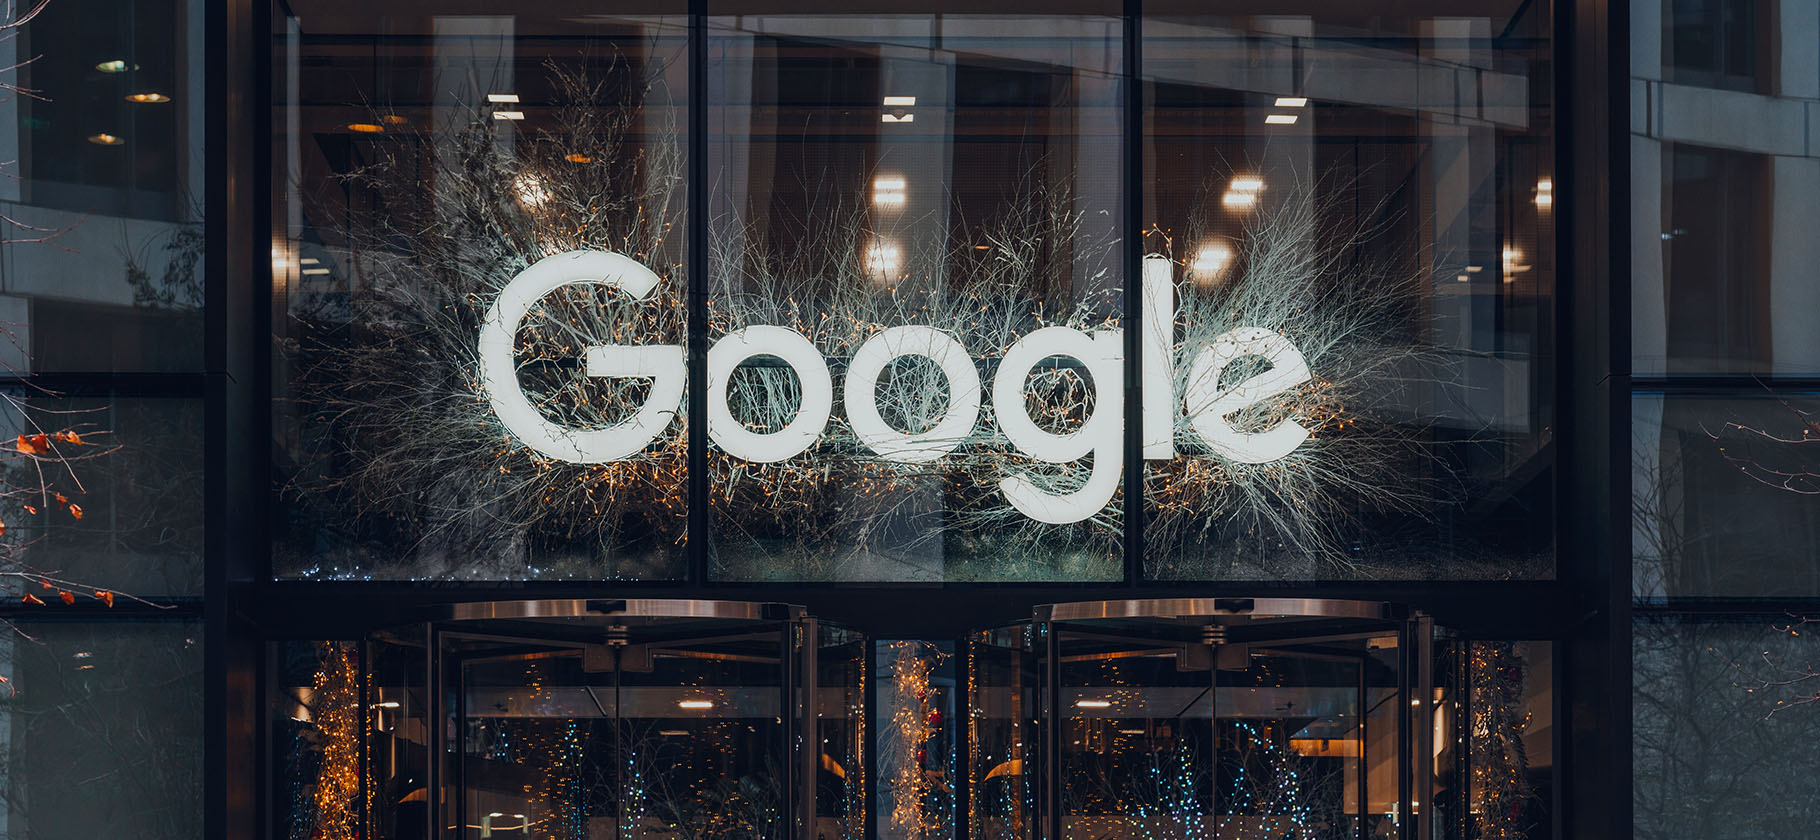 Материнская компания Google впервые за два года отчиталась хуже ожиданий